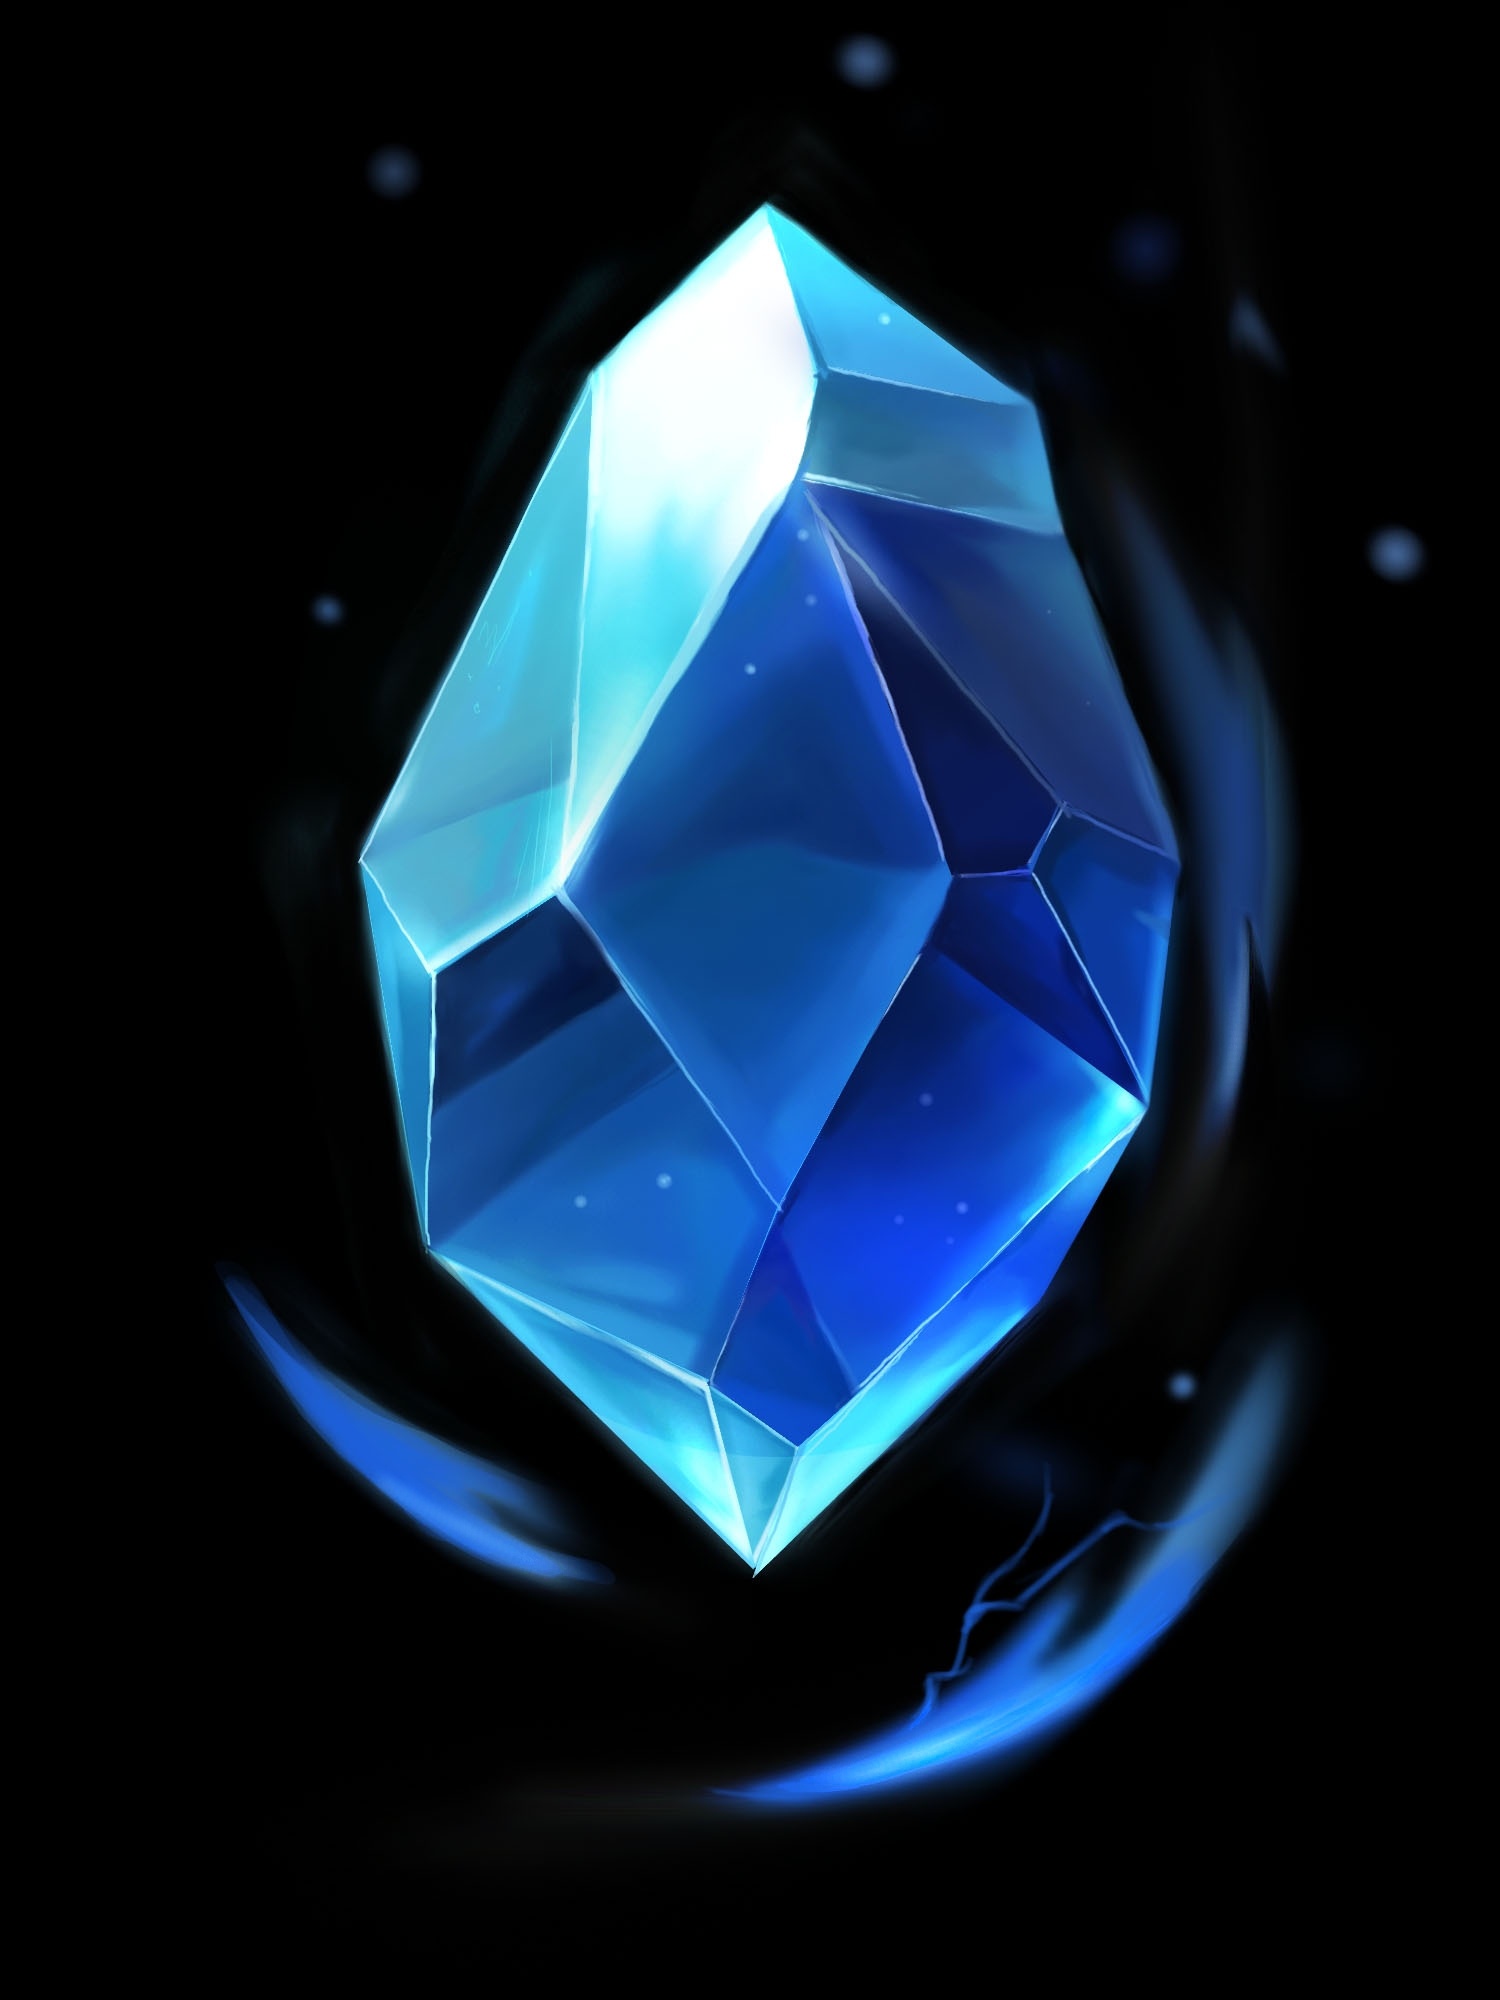 高清图|海瑞温斯顿INCREDIBLES高级珠宝系列锦簇镶嵌蓝宝石钻石项链项链图片1|腕表之家-珠宝